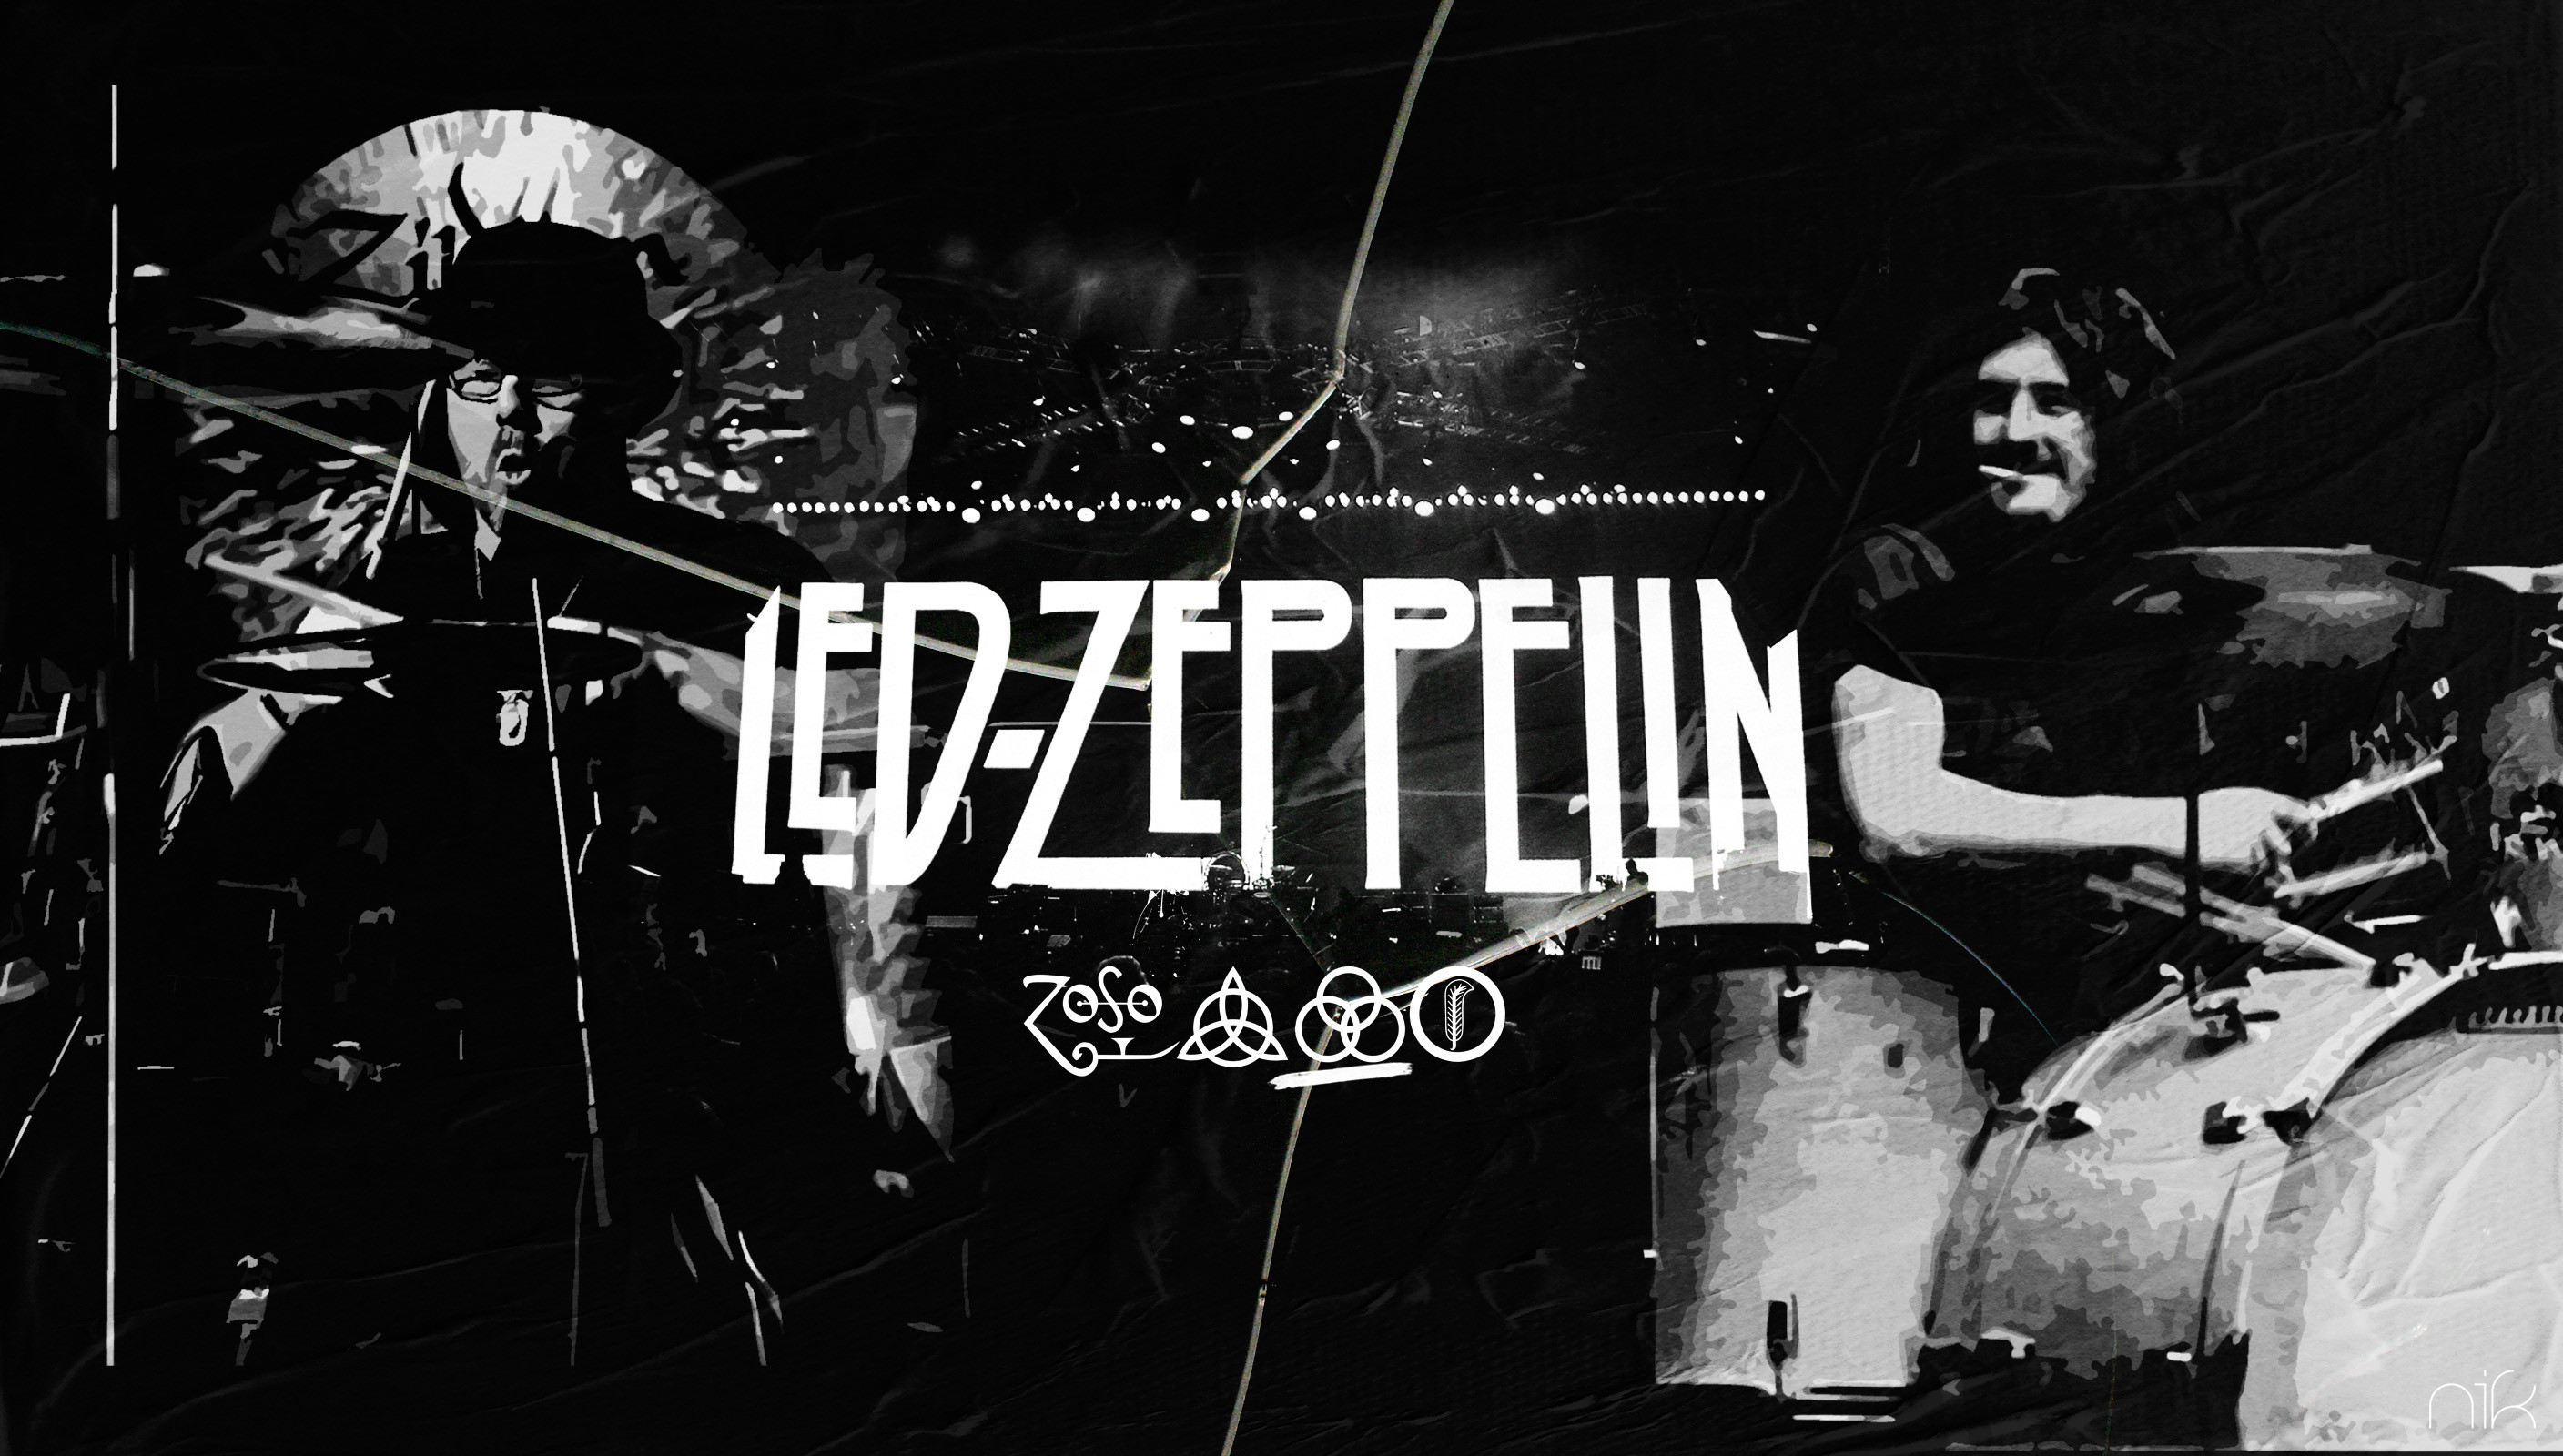 2816x1600 Led Zeppelin Wallpaper 4 by nicollearl on DeviantArt